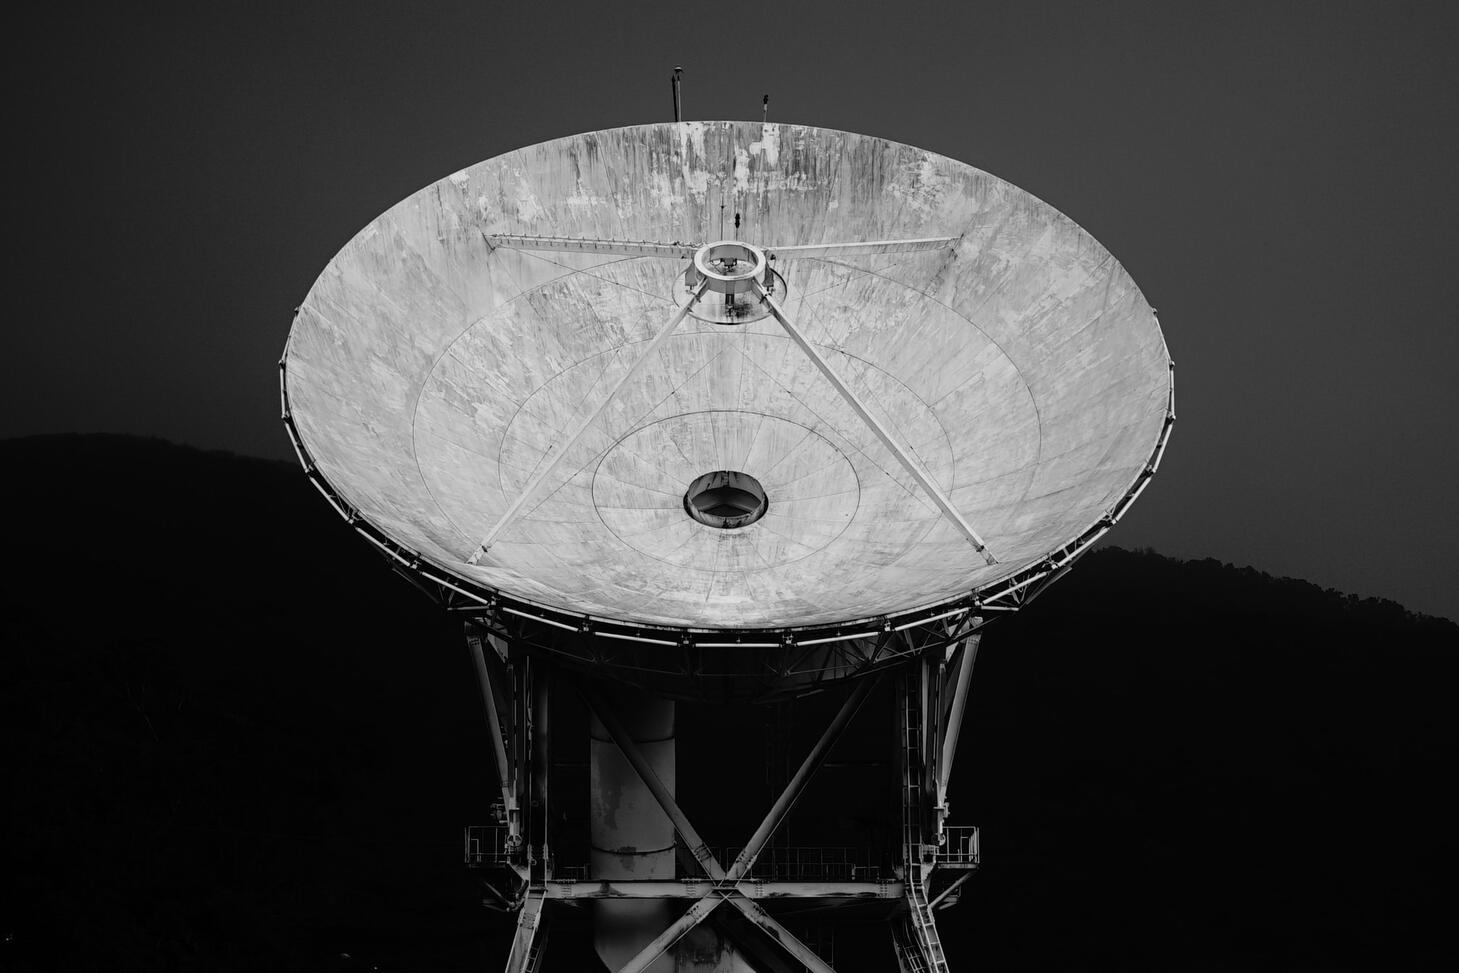 Columbia Institute for Tele-Information (CITI) Image